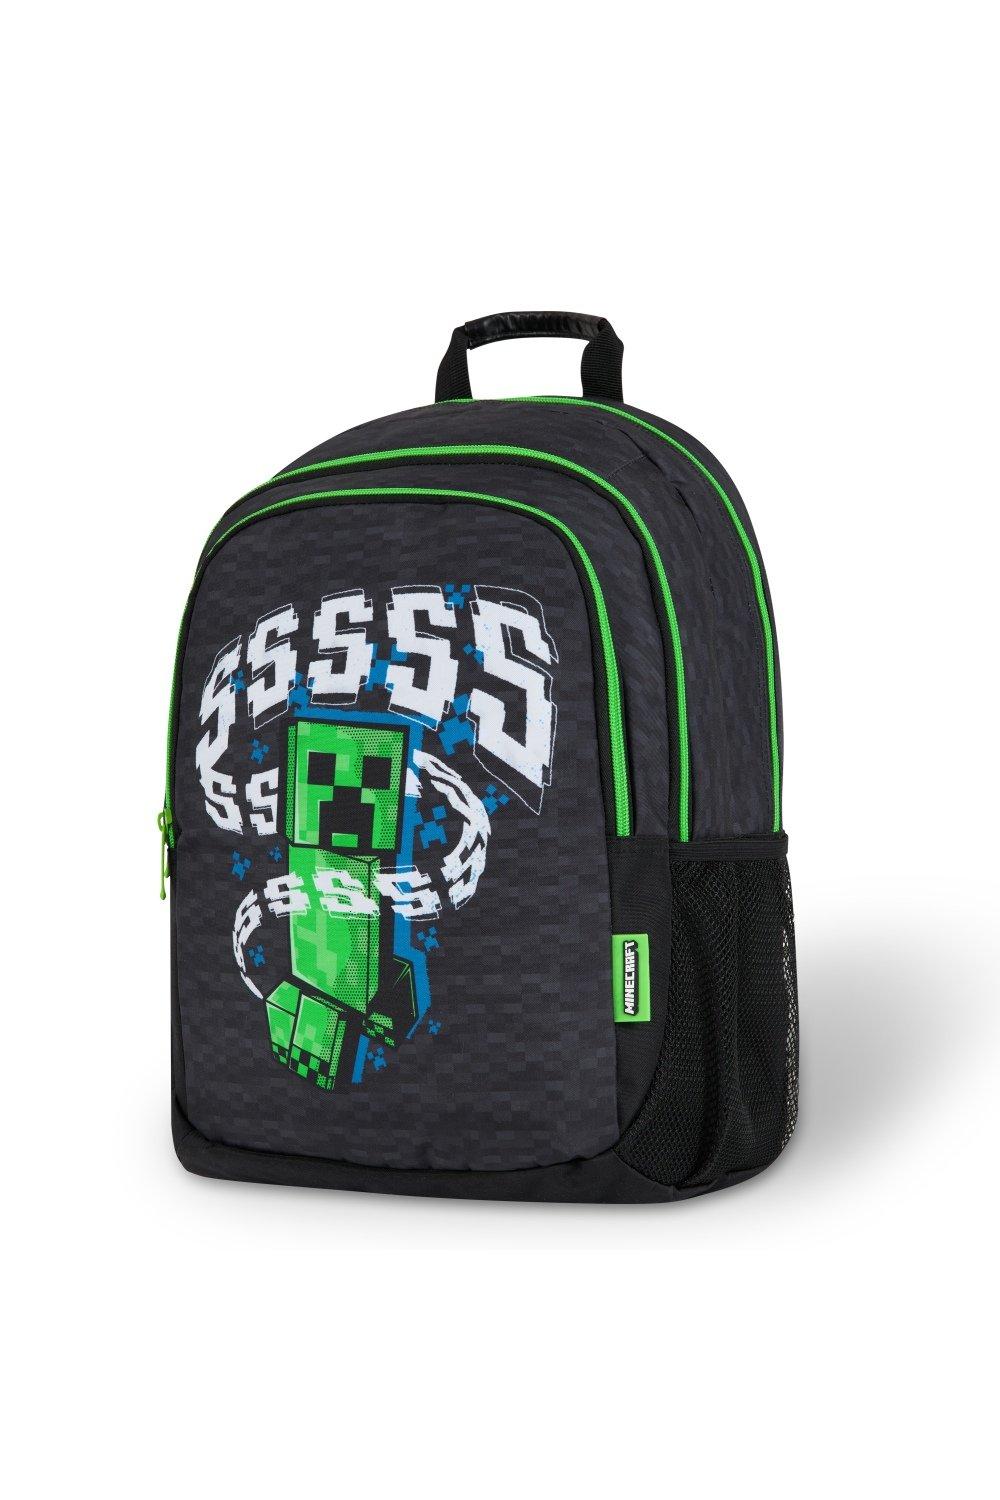 Школьный рюкзак Minecraft, черный dogecoin школьная сумка рюкзак детский мини рюкзак 12 дюймов детский сад мультфильмы школьная сумка mochila